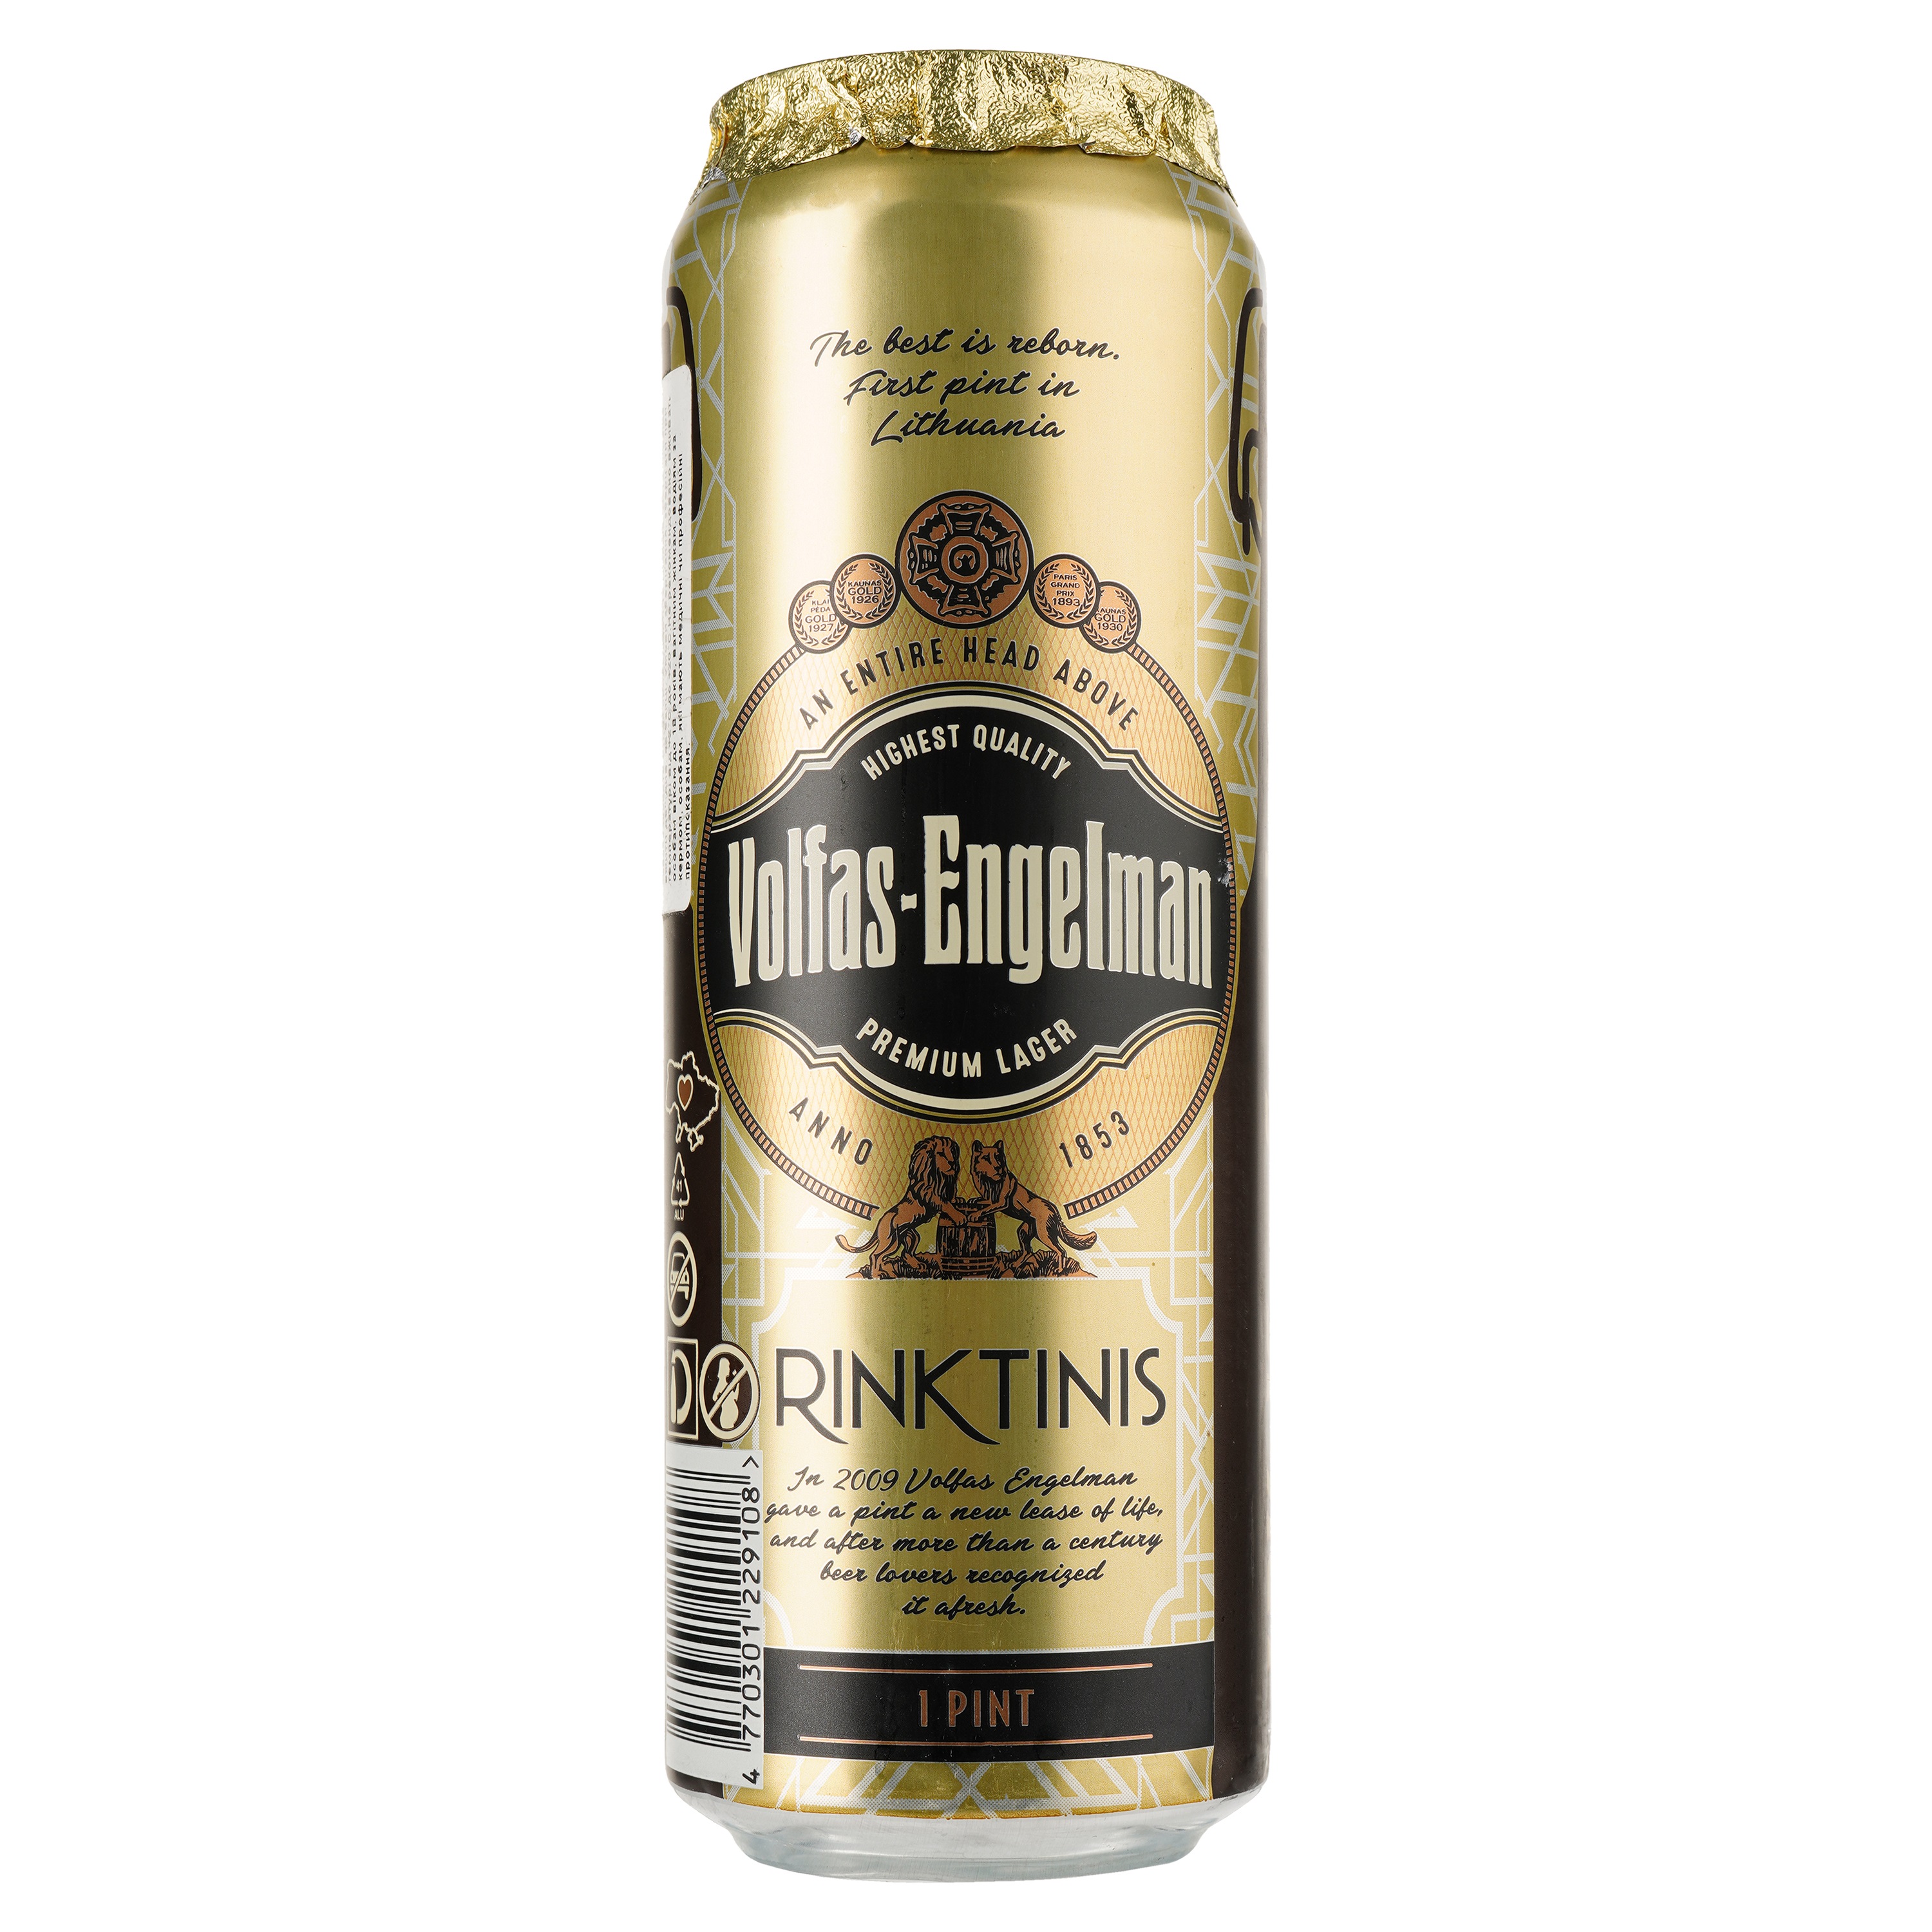 Пиво Volfas Engelman Rinktinis Premium Lager, светлое, 5,2%, ж/б, 0,568 л (921773) - фото 1